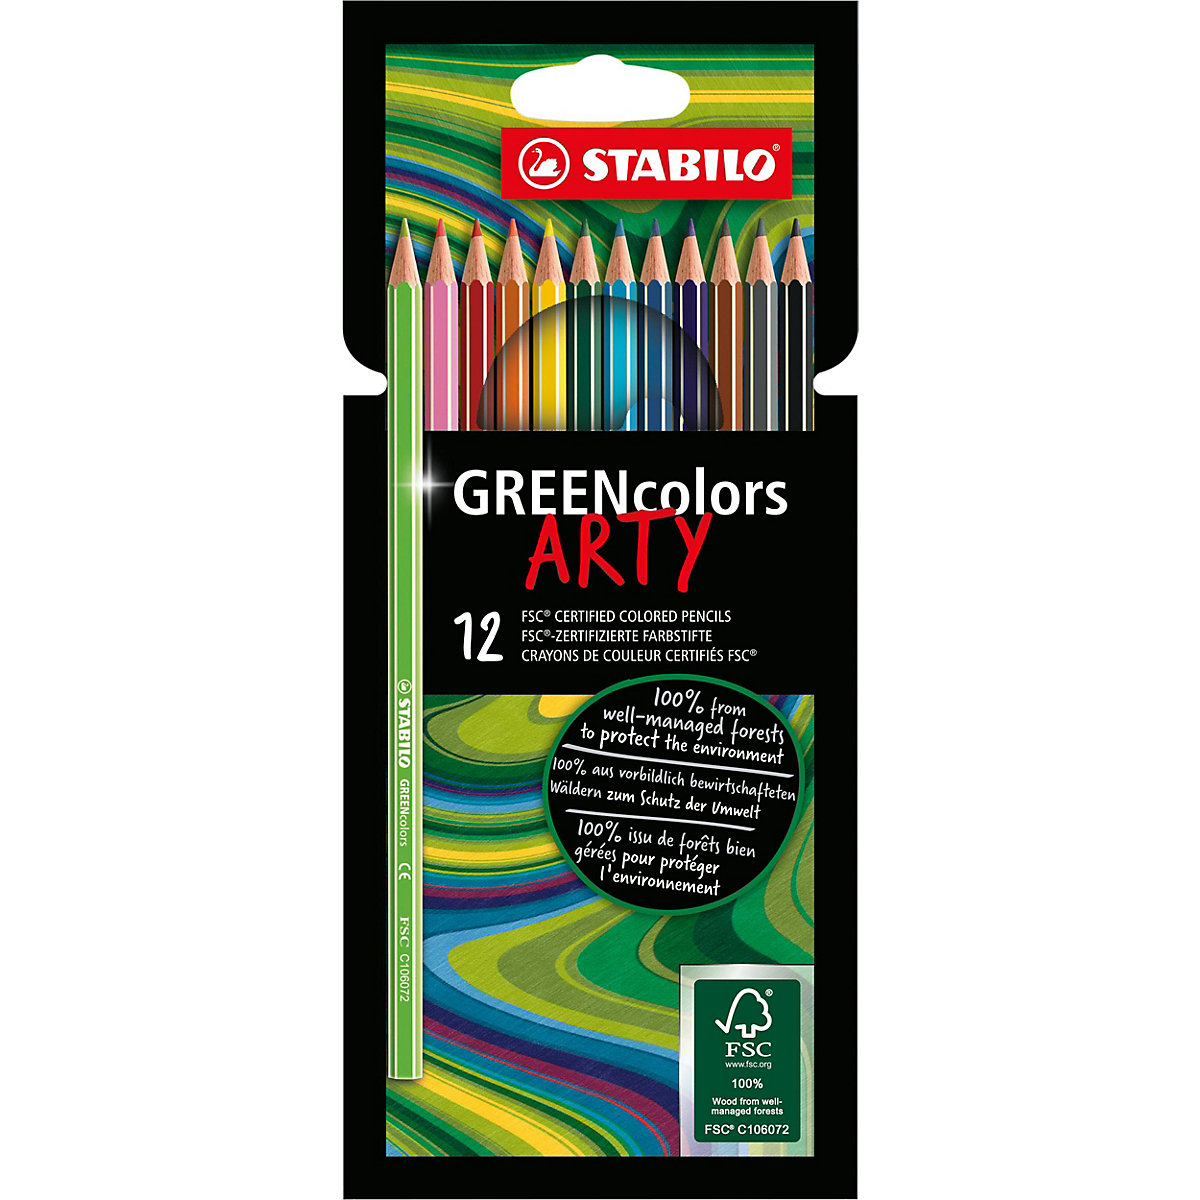 Buntstifte GREENcolors ARTY 12 Farben